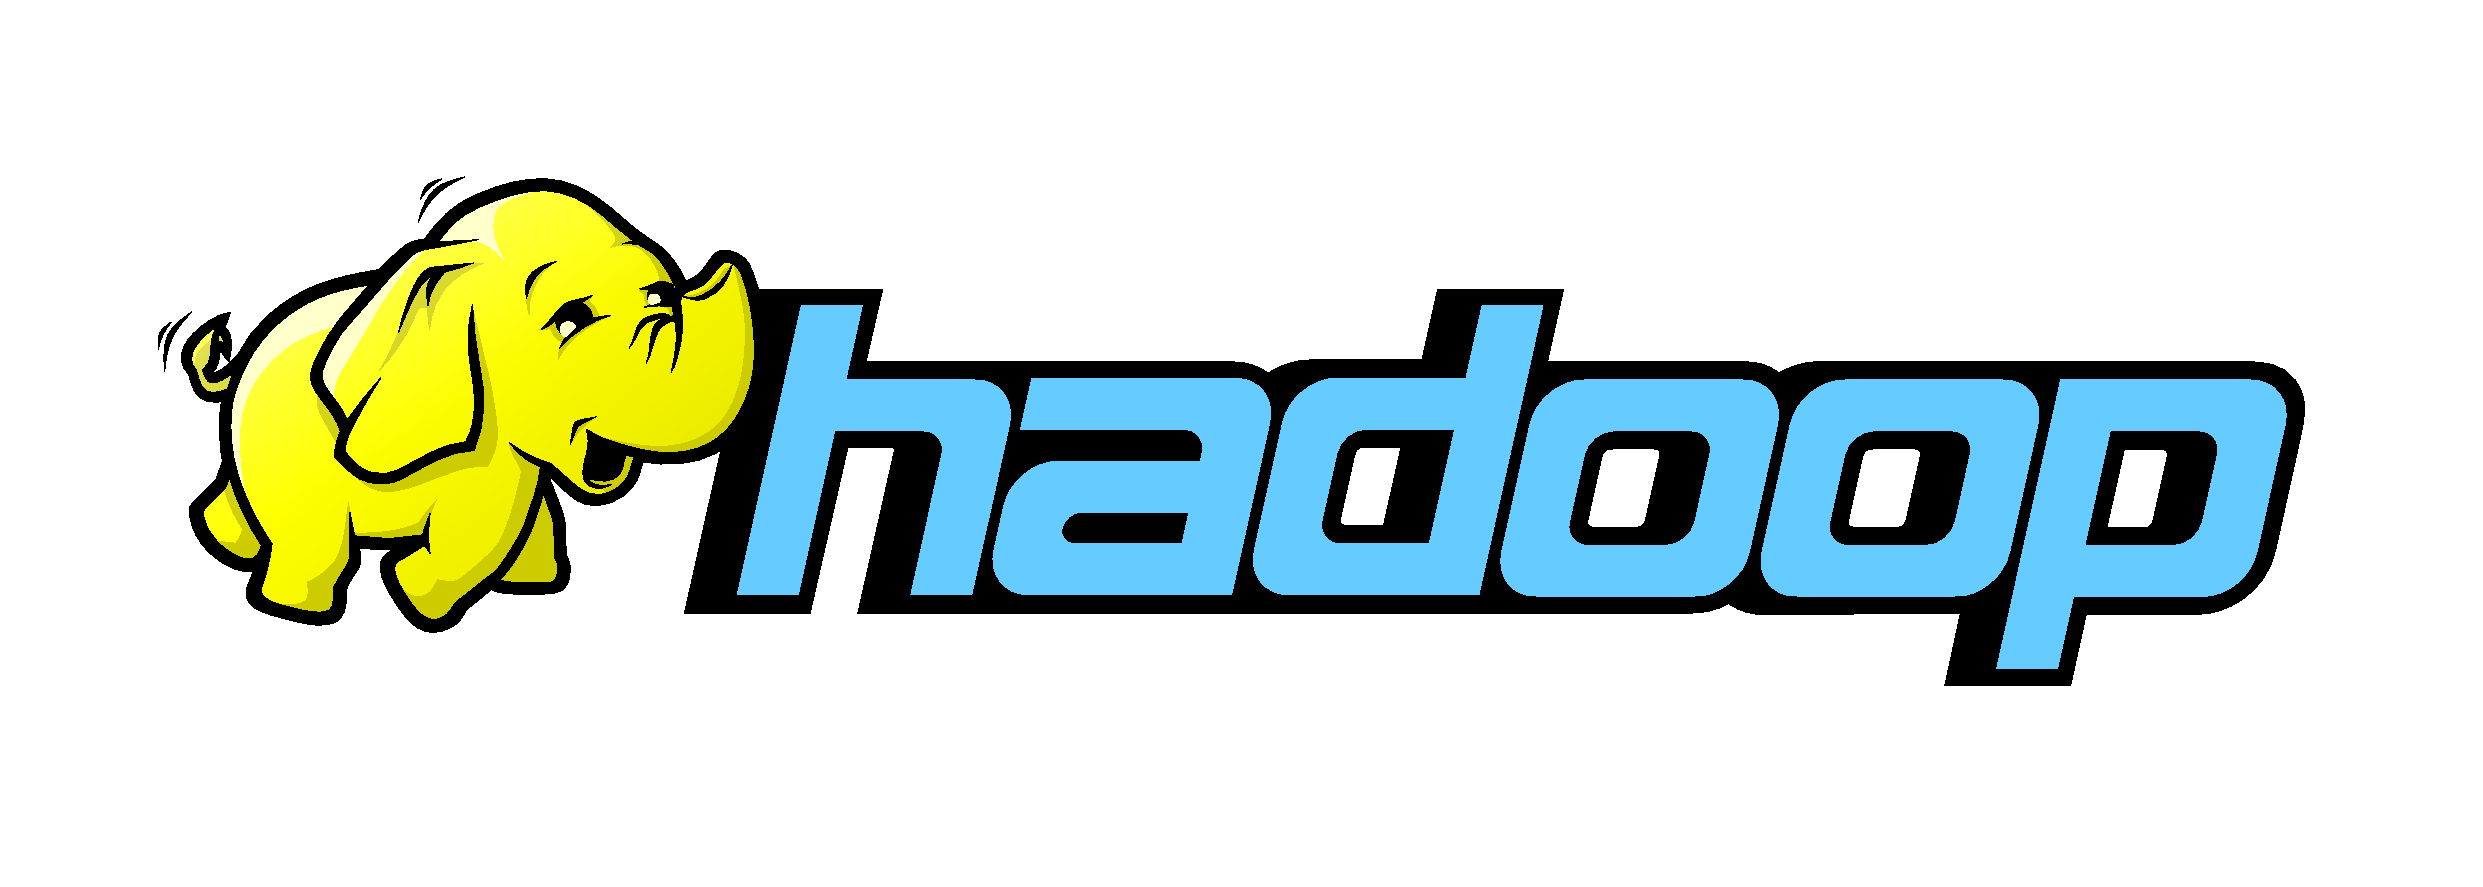 Hadoop ecosystem